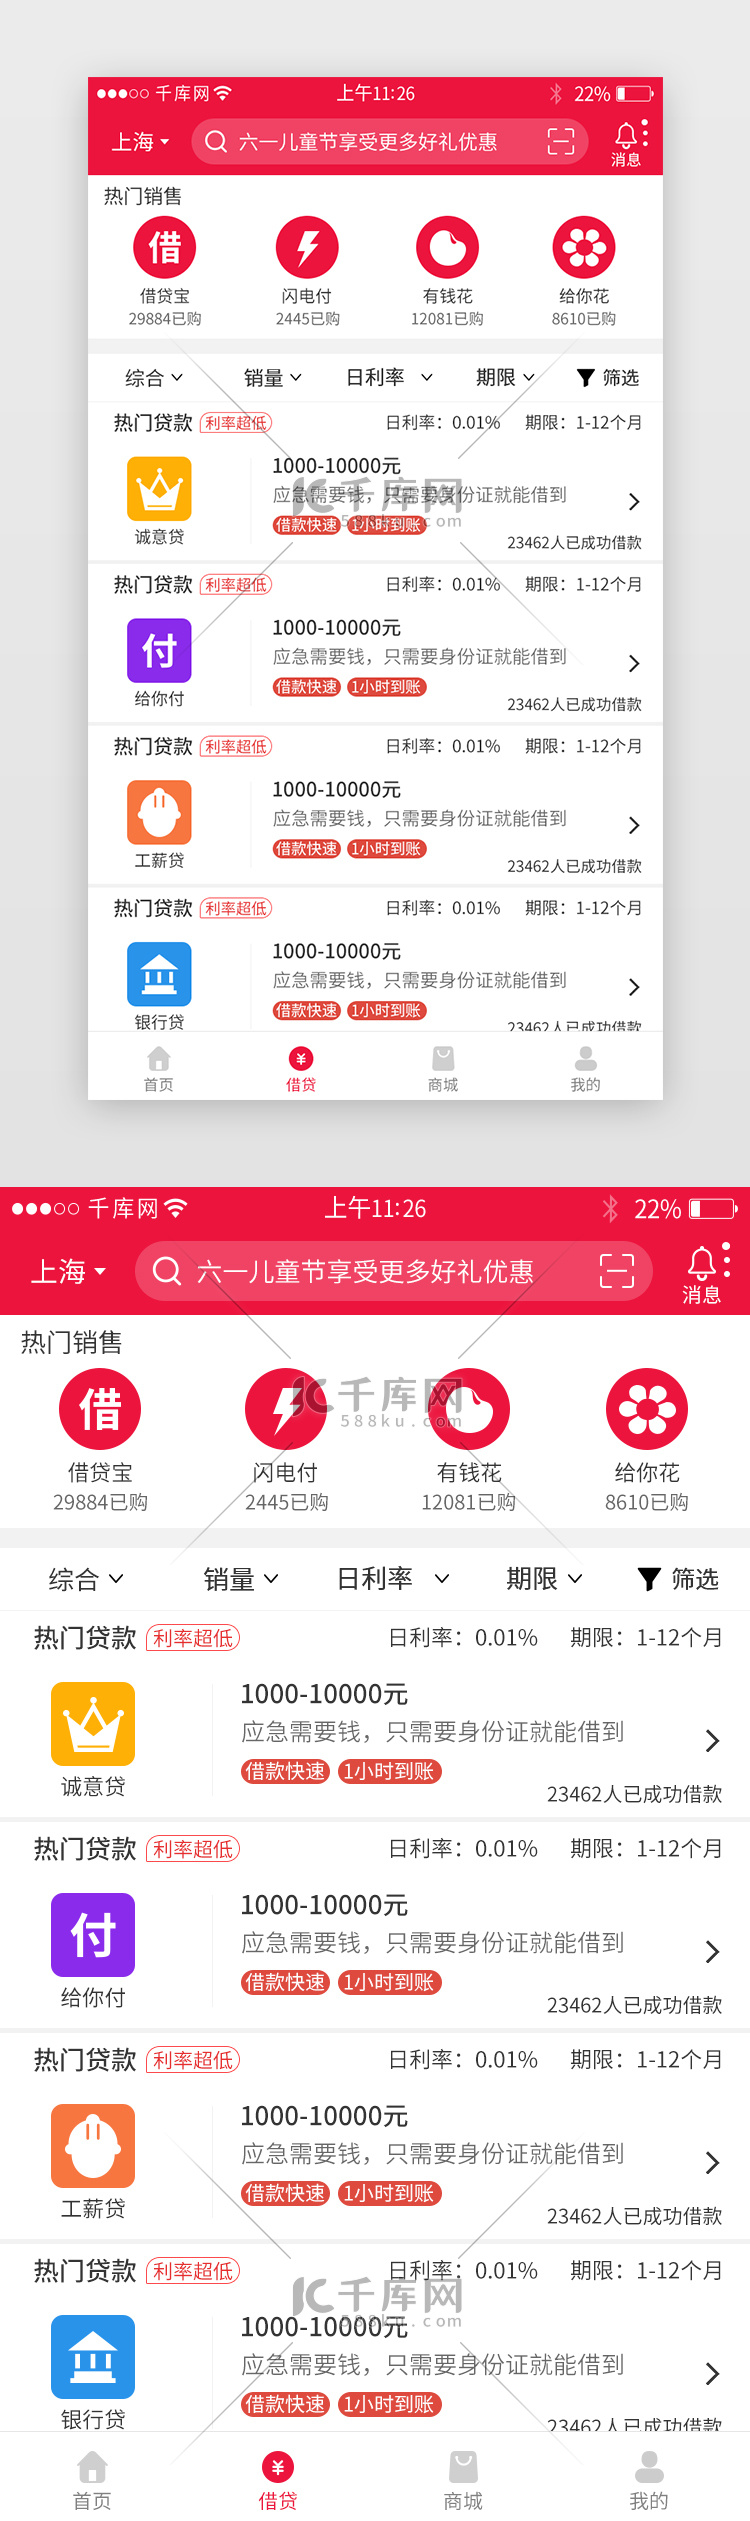 红色系借贷金融app界面模板